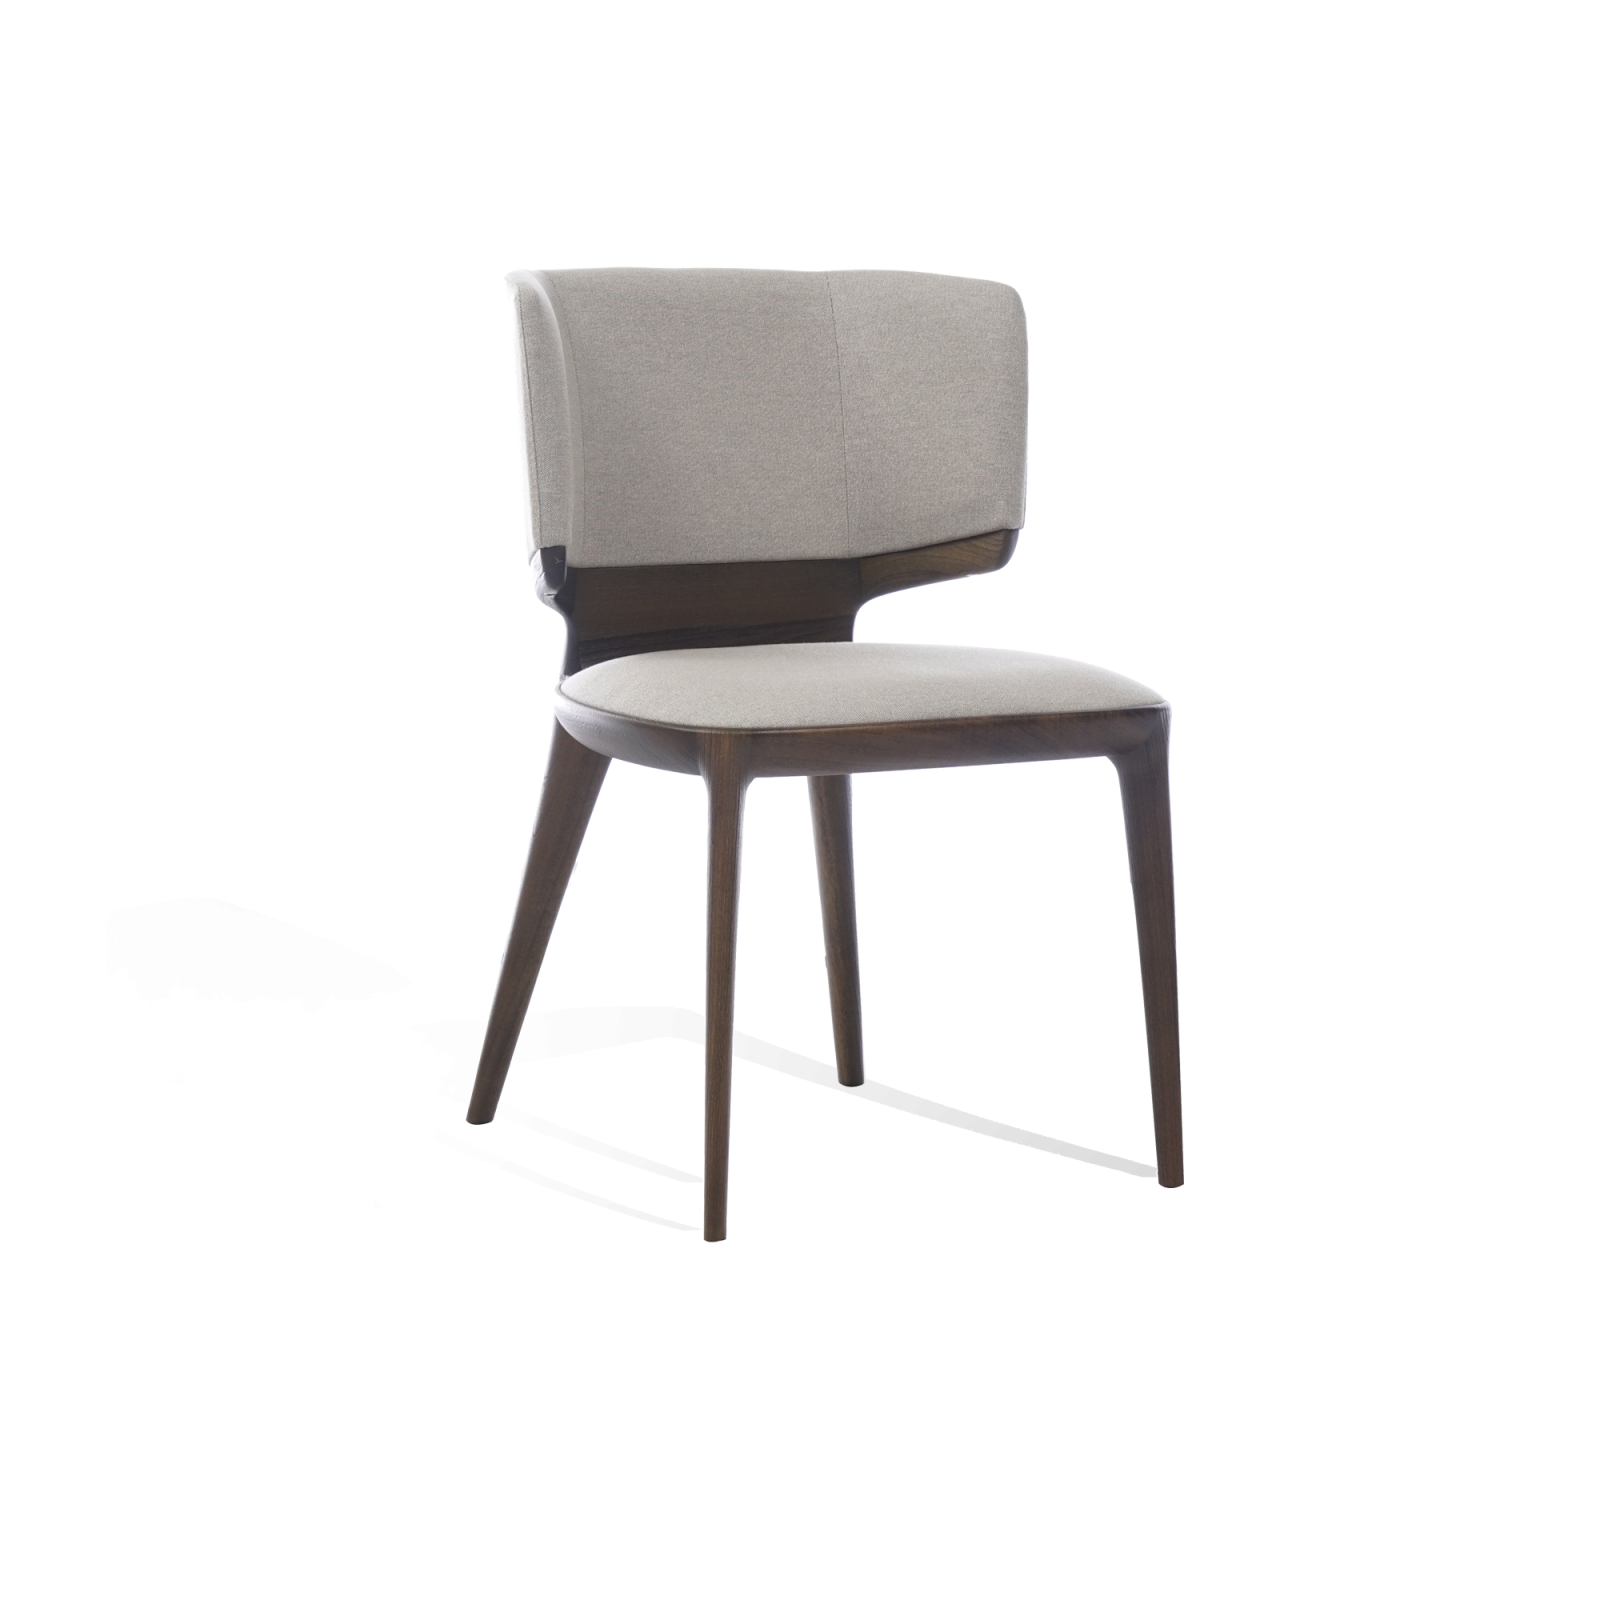 ergonomik rahat formu ve masif ahşabı ile ayak kısmındaki metal detaylarının ince işçiliğinden oluşan violet sandalye.